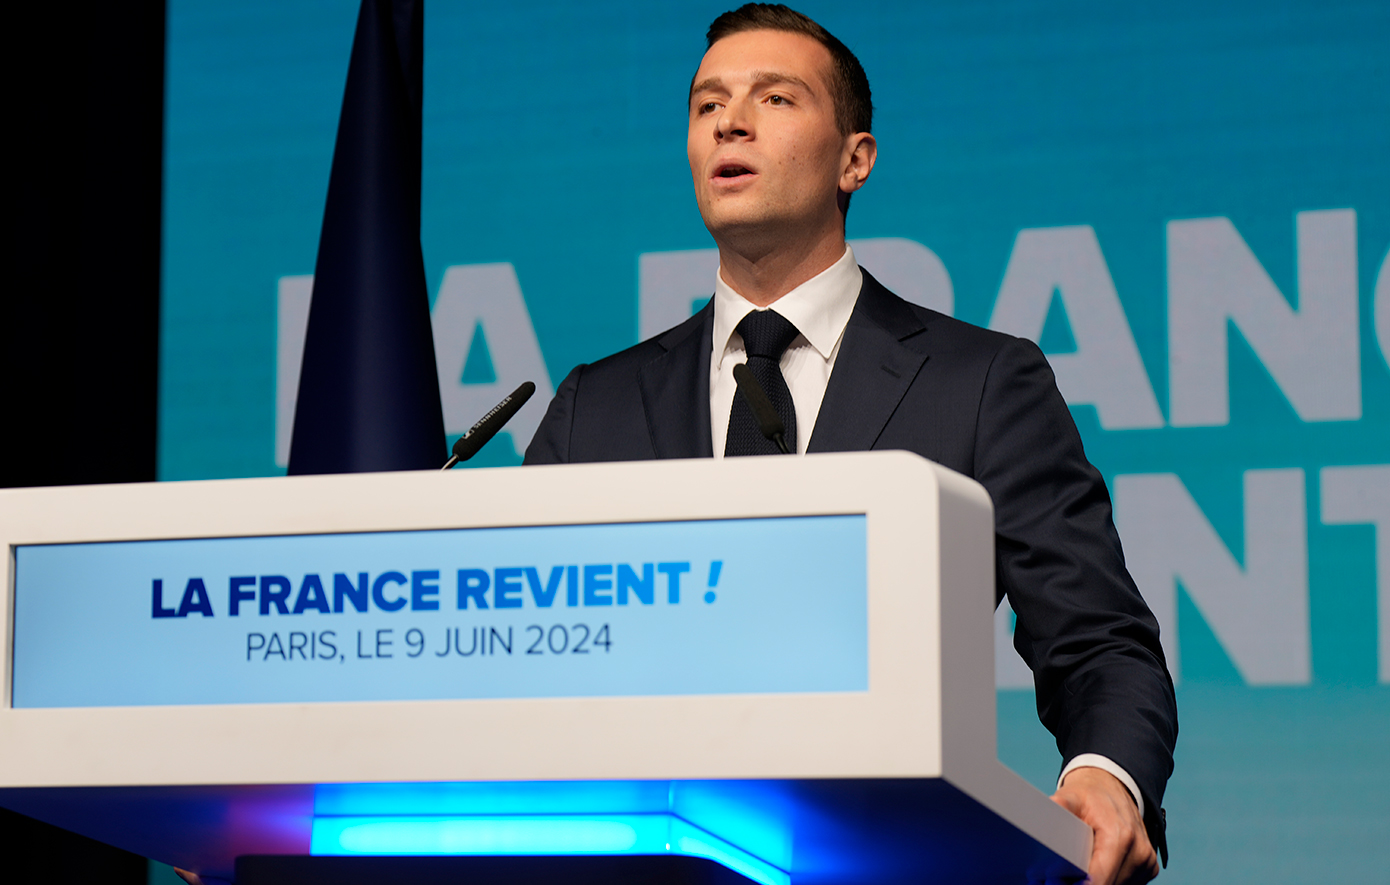 Ζορντάν Μπαρντελά: «Θα είμαι πρωθυπουργός όλων των Γάλλων, θα σέβομαι το Σύνταγμα αλλά θα είμαι και αδιάλλακτος»